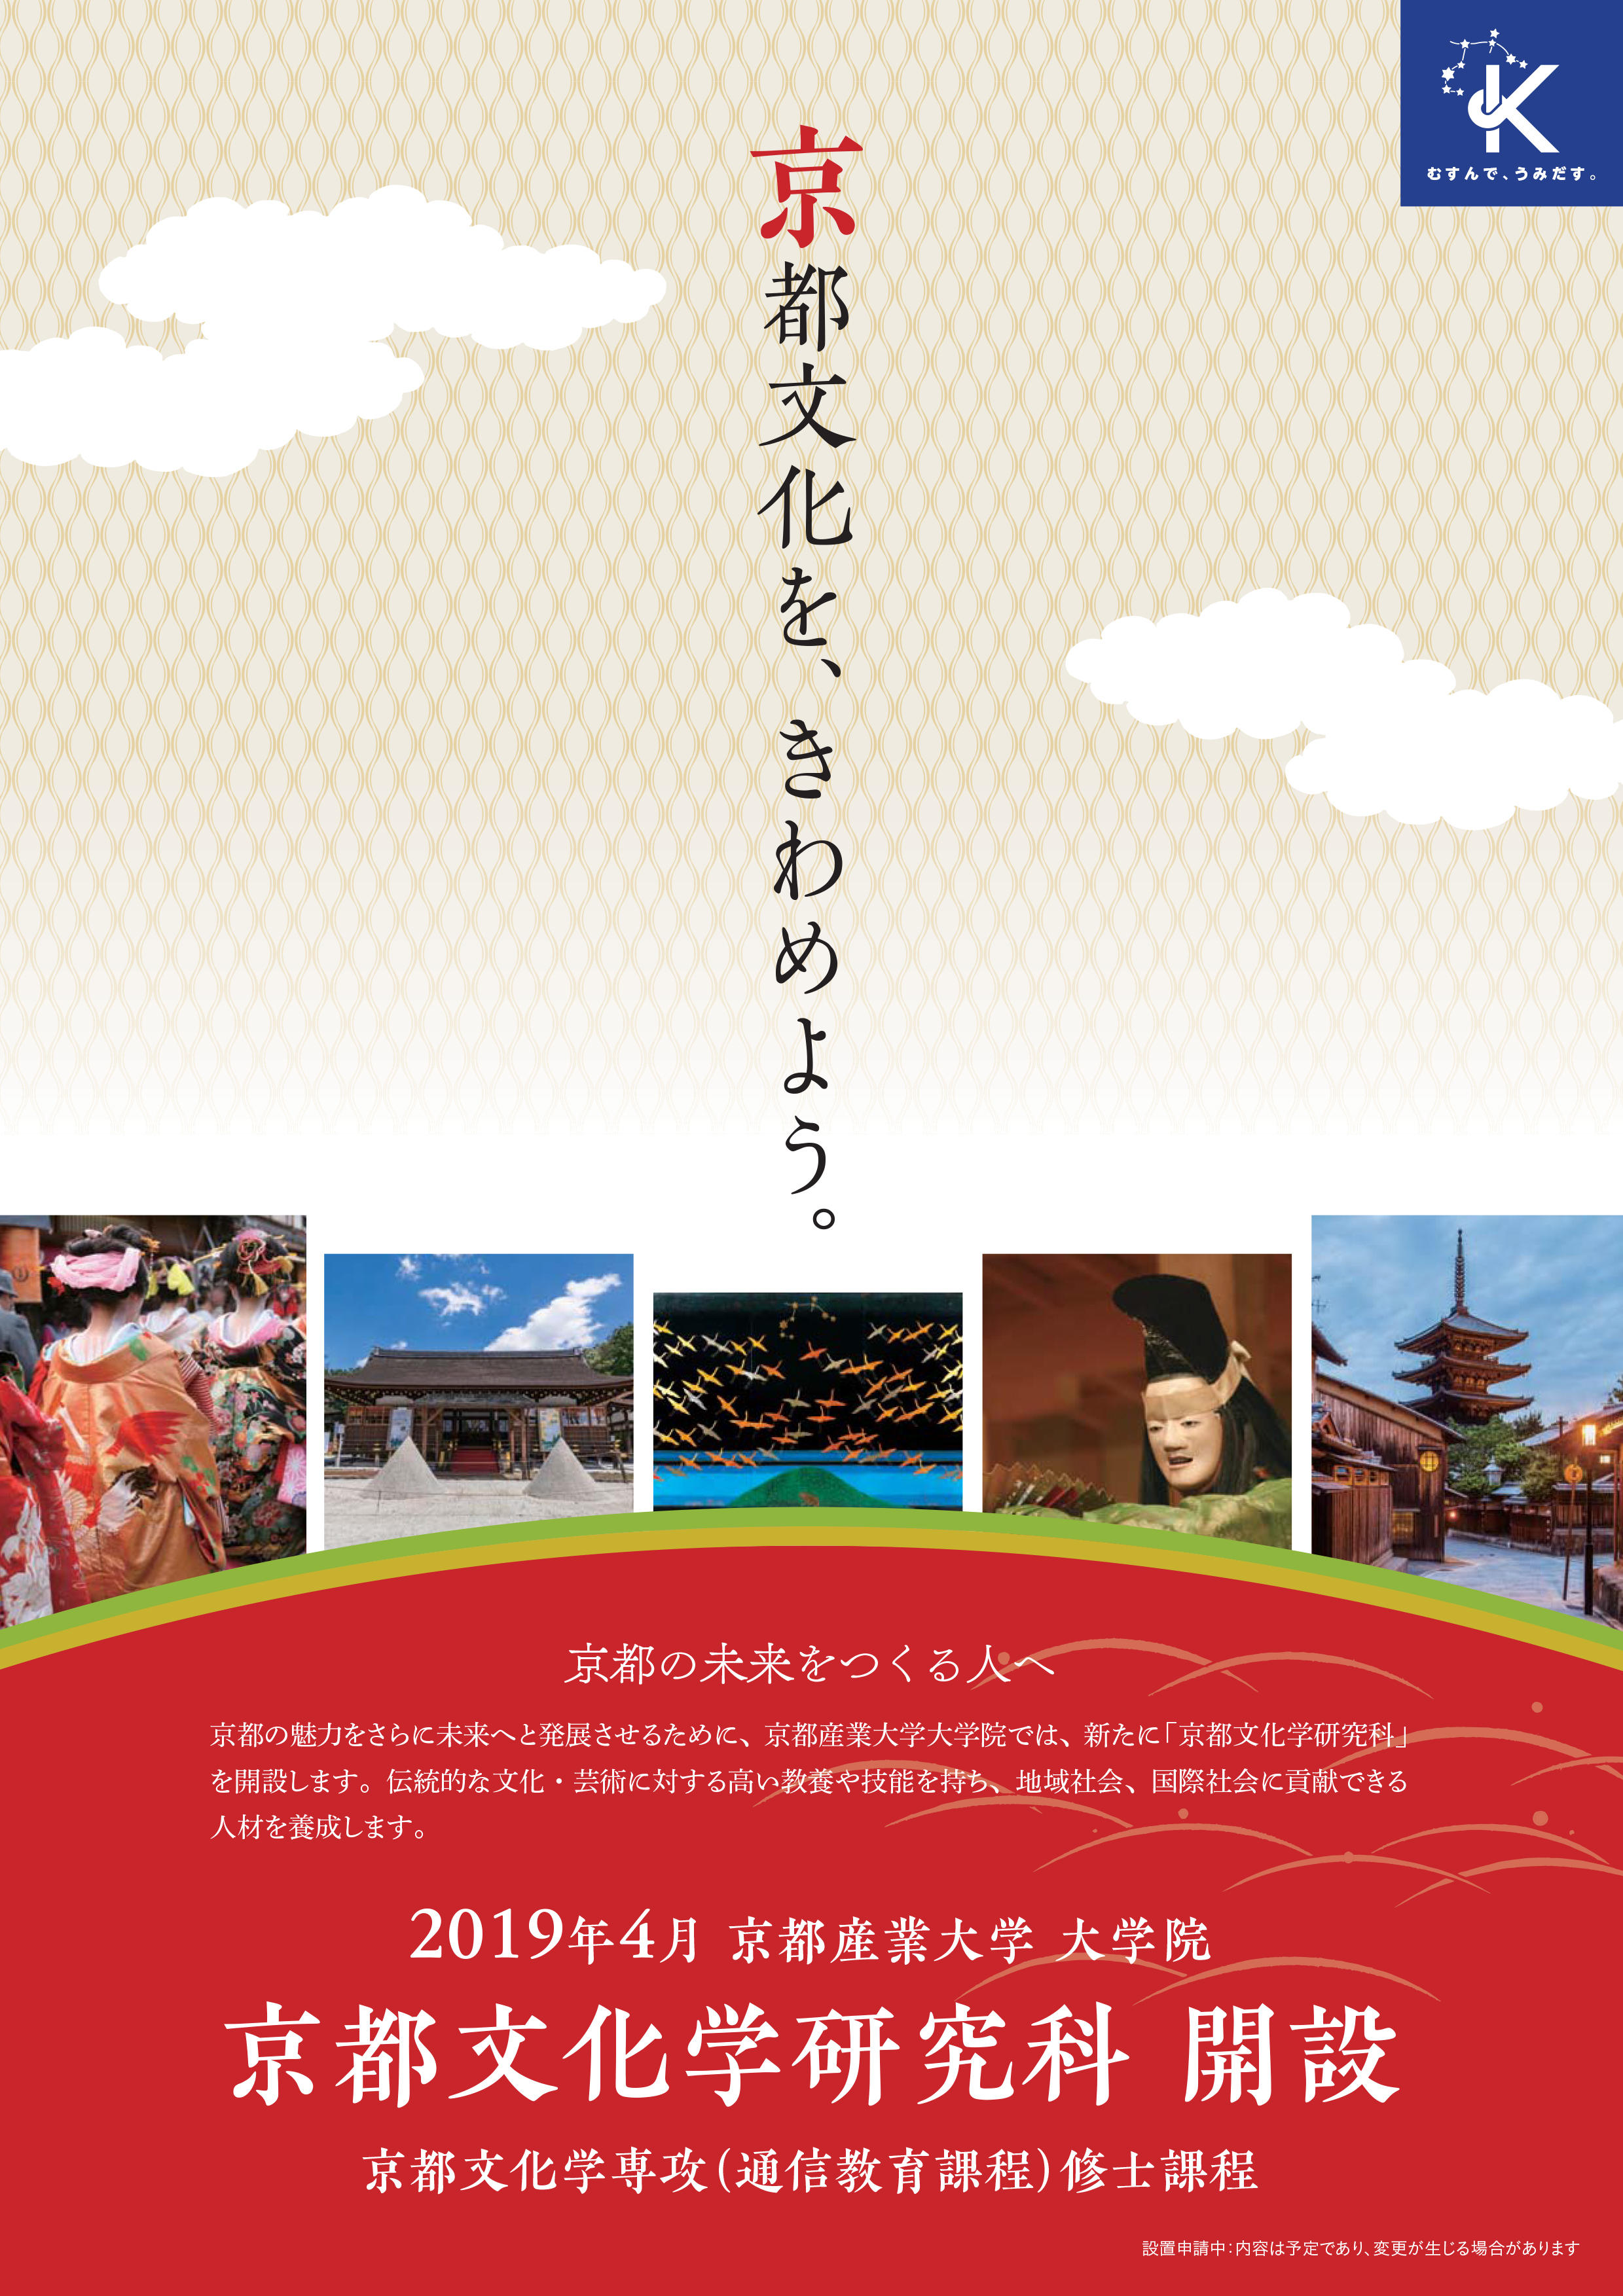 2019年4月、京都産業大学大学院京都文化学研究科（通信教育課程）を新設。伝統的な文化・芸術に対する高い教養や技能を持ち、地域社会・国際社会に貢献できる人材を育成-京都産業大学-